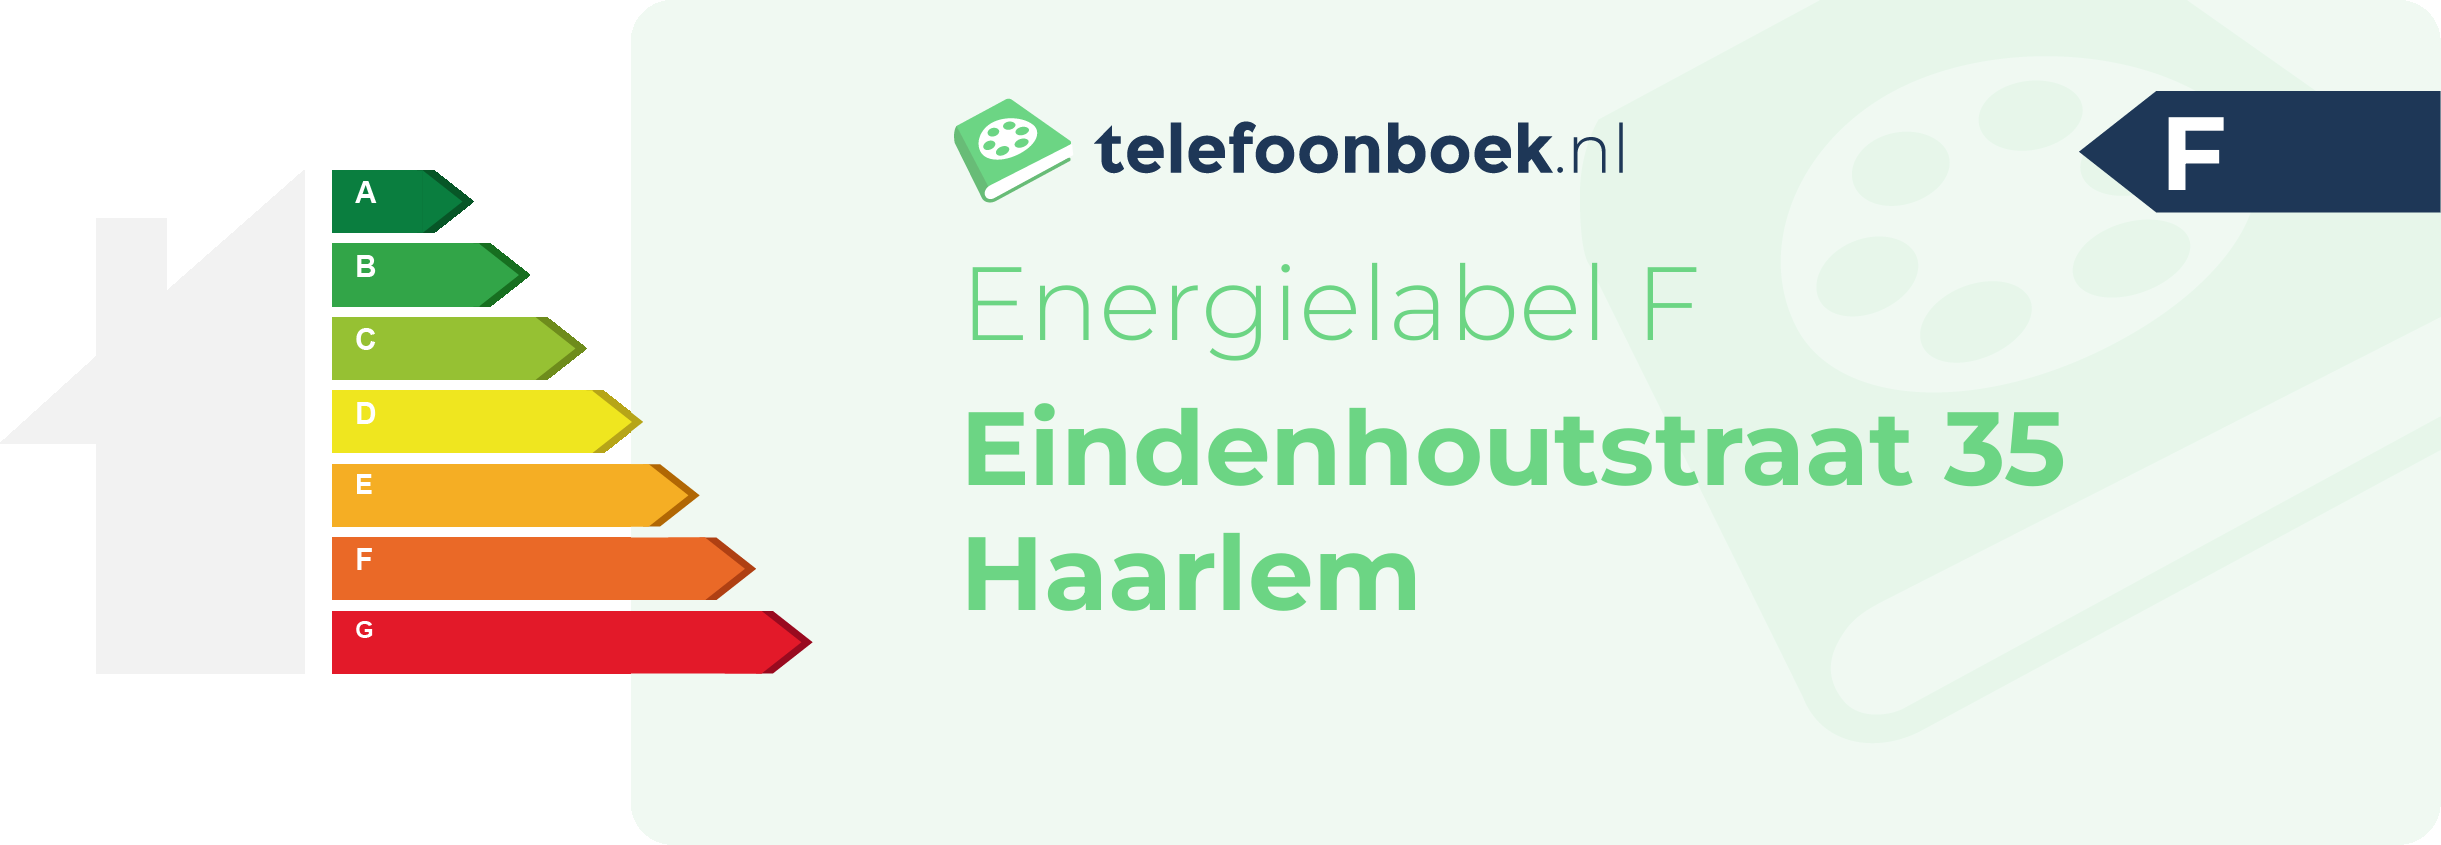 Energielabel Eindenhoutstraat 35 Haarlem